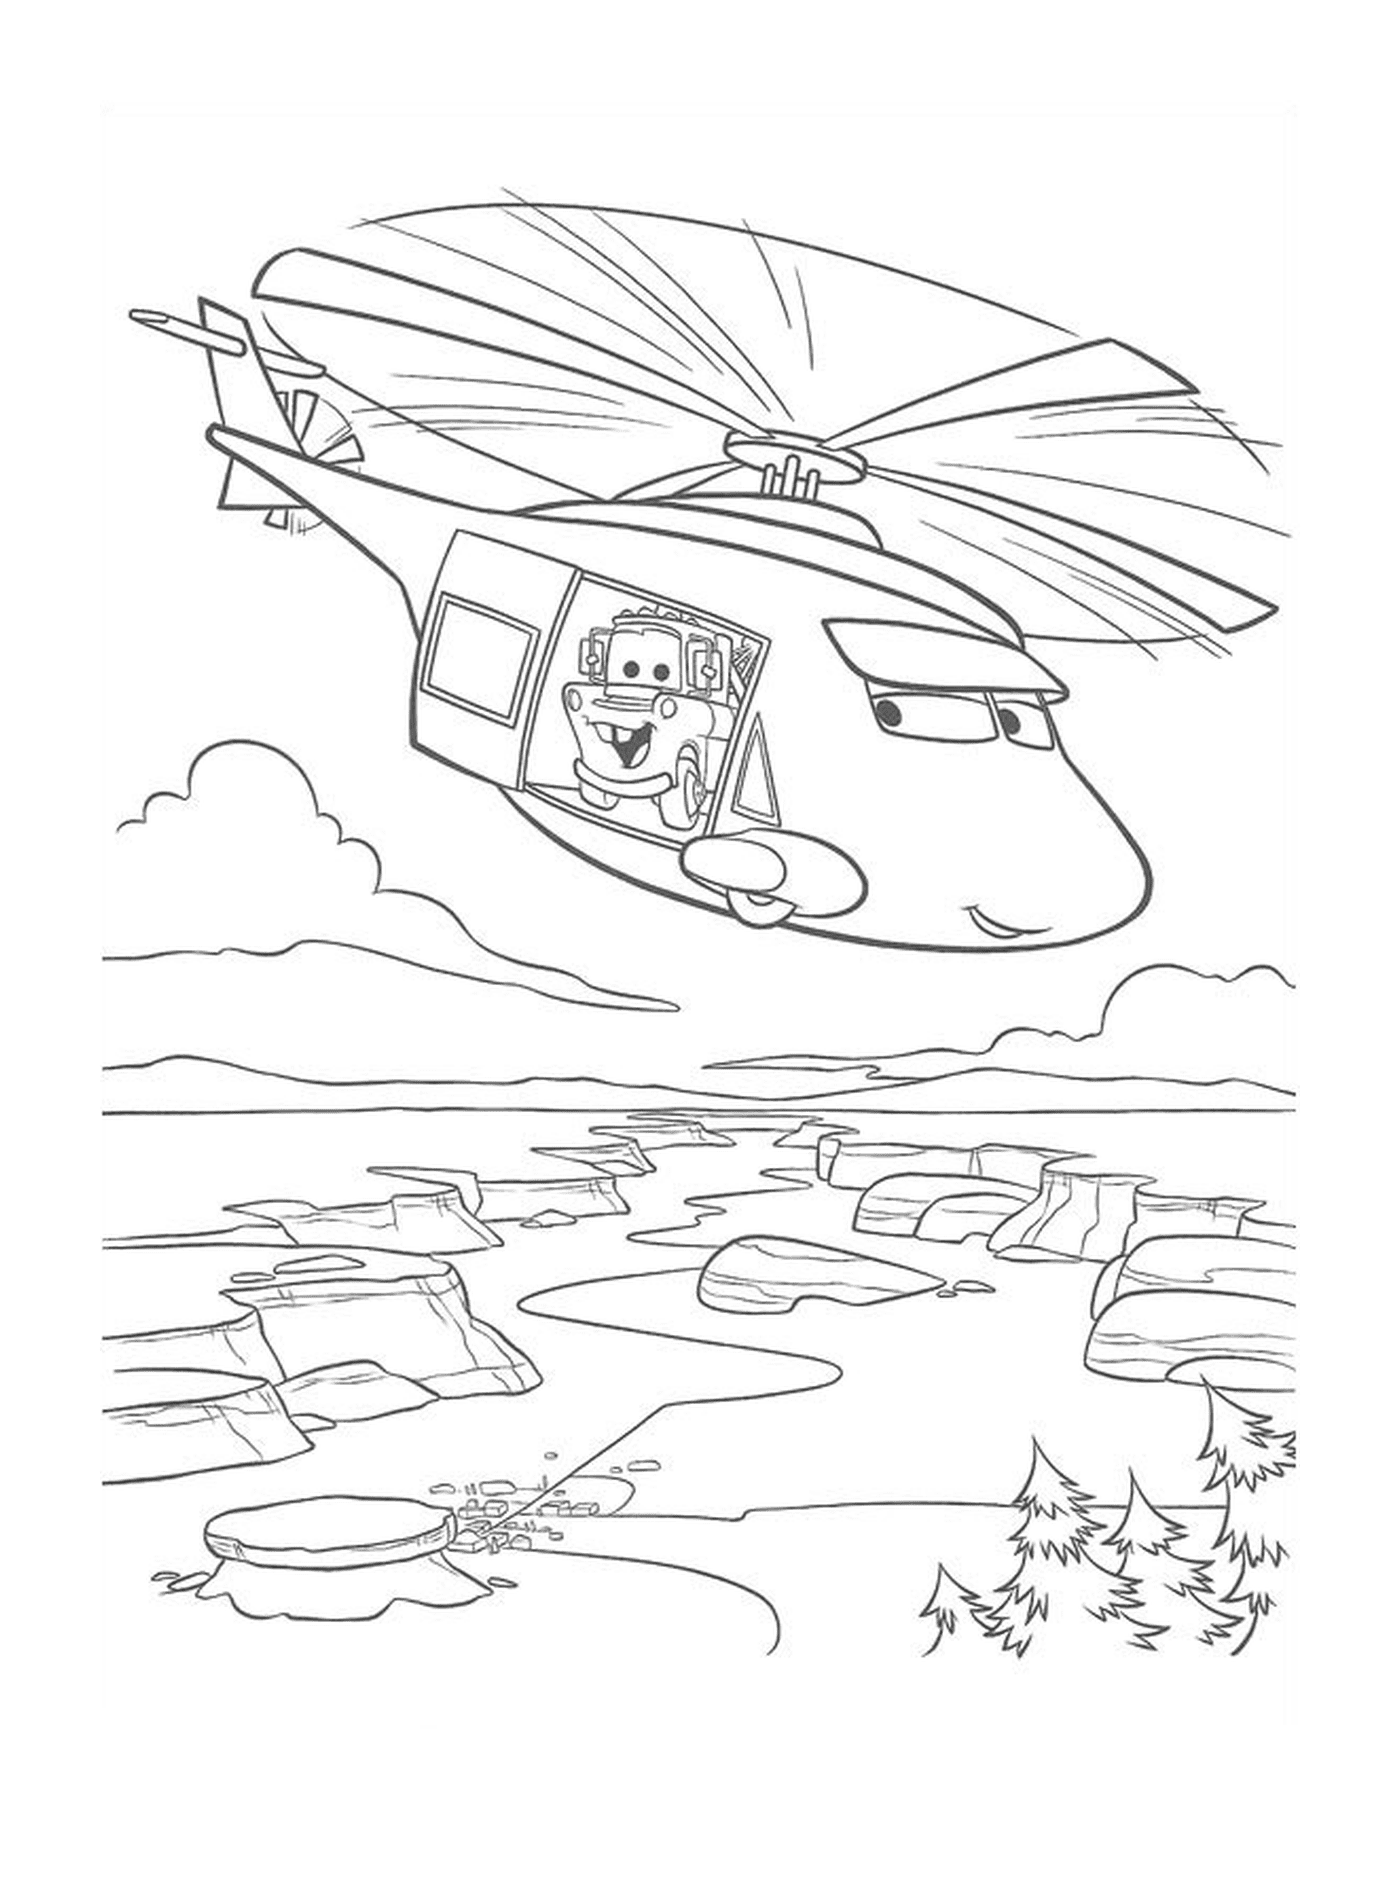  Torre de helicóptero con Flash McQueen 